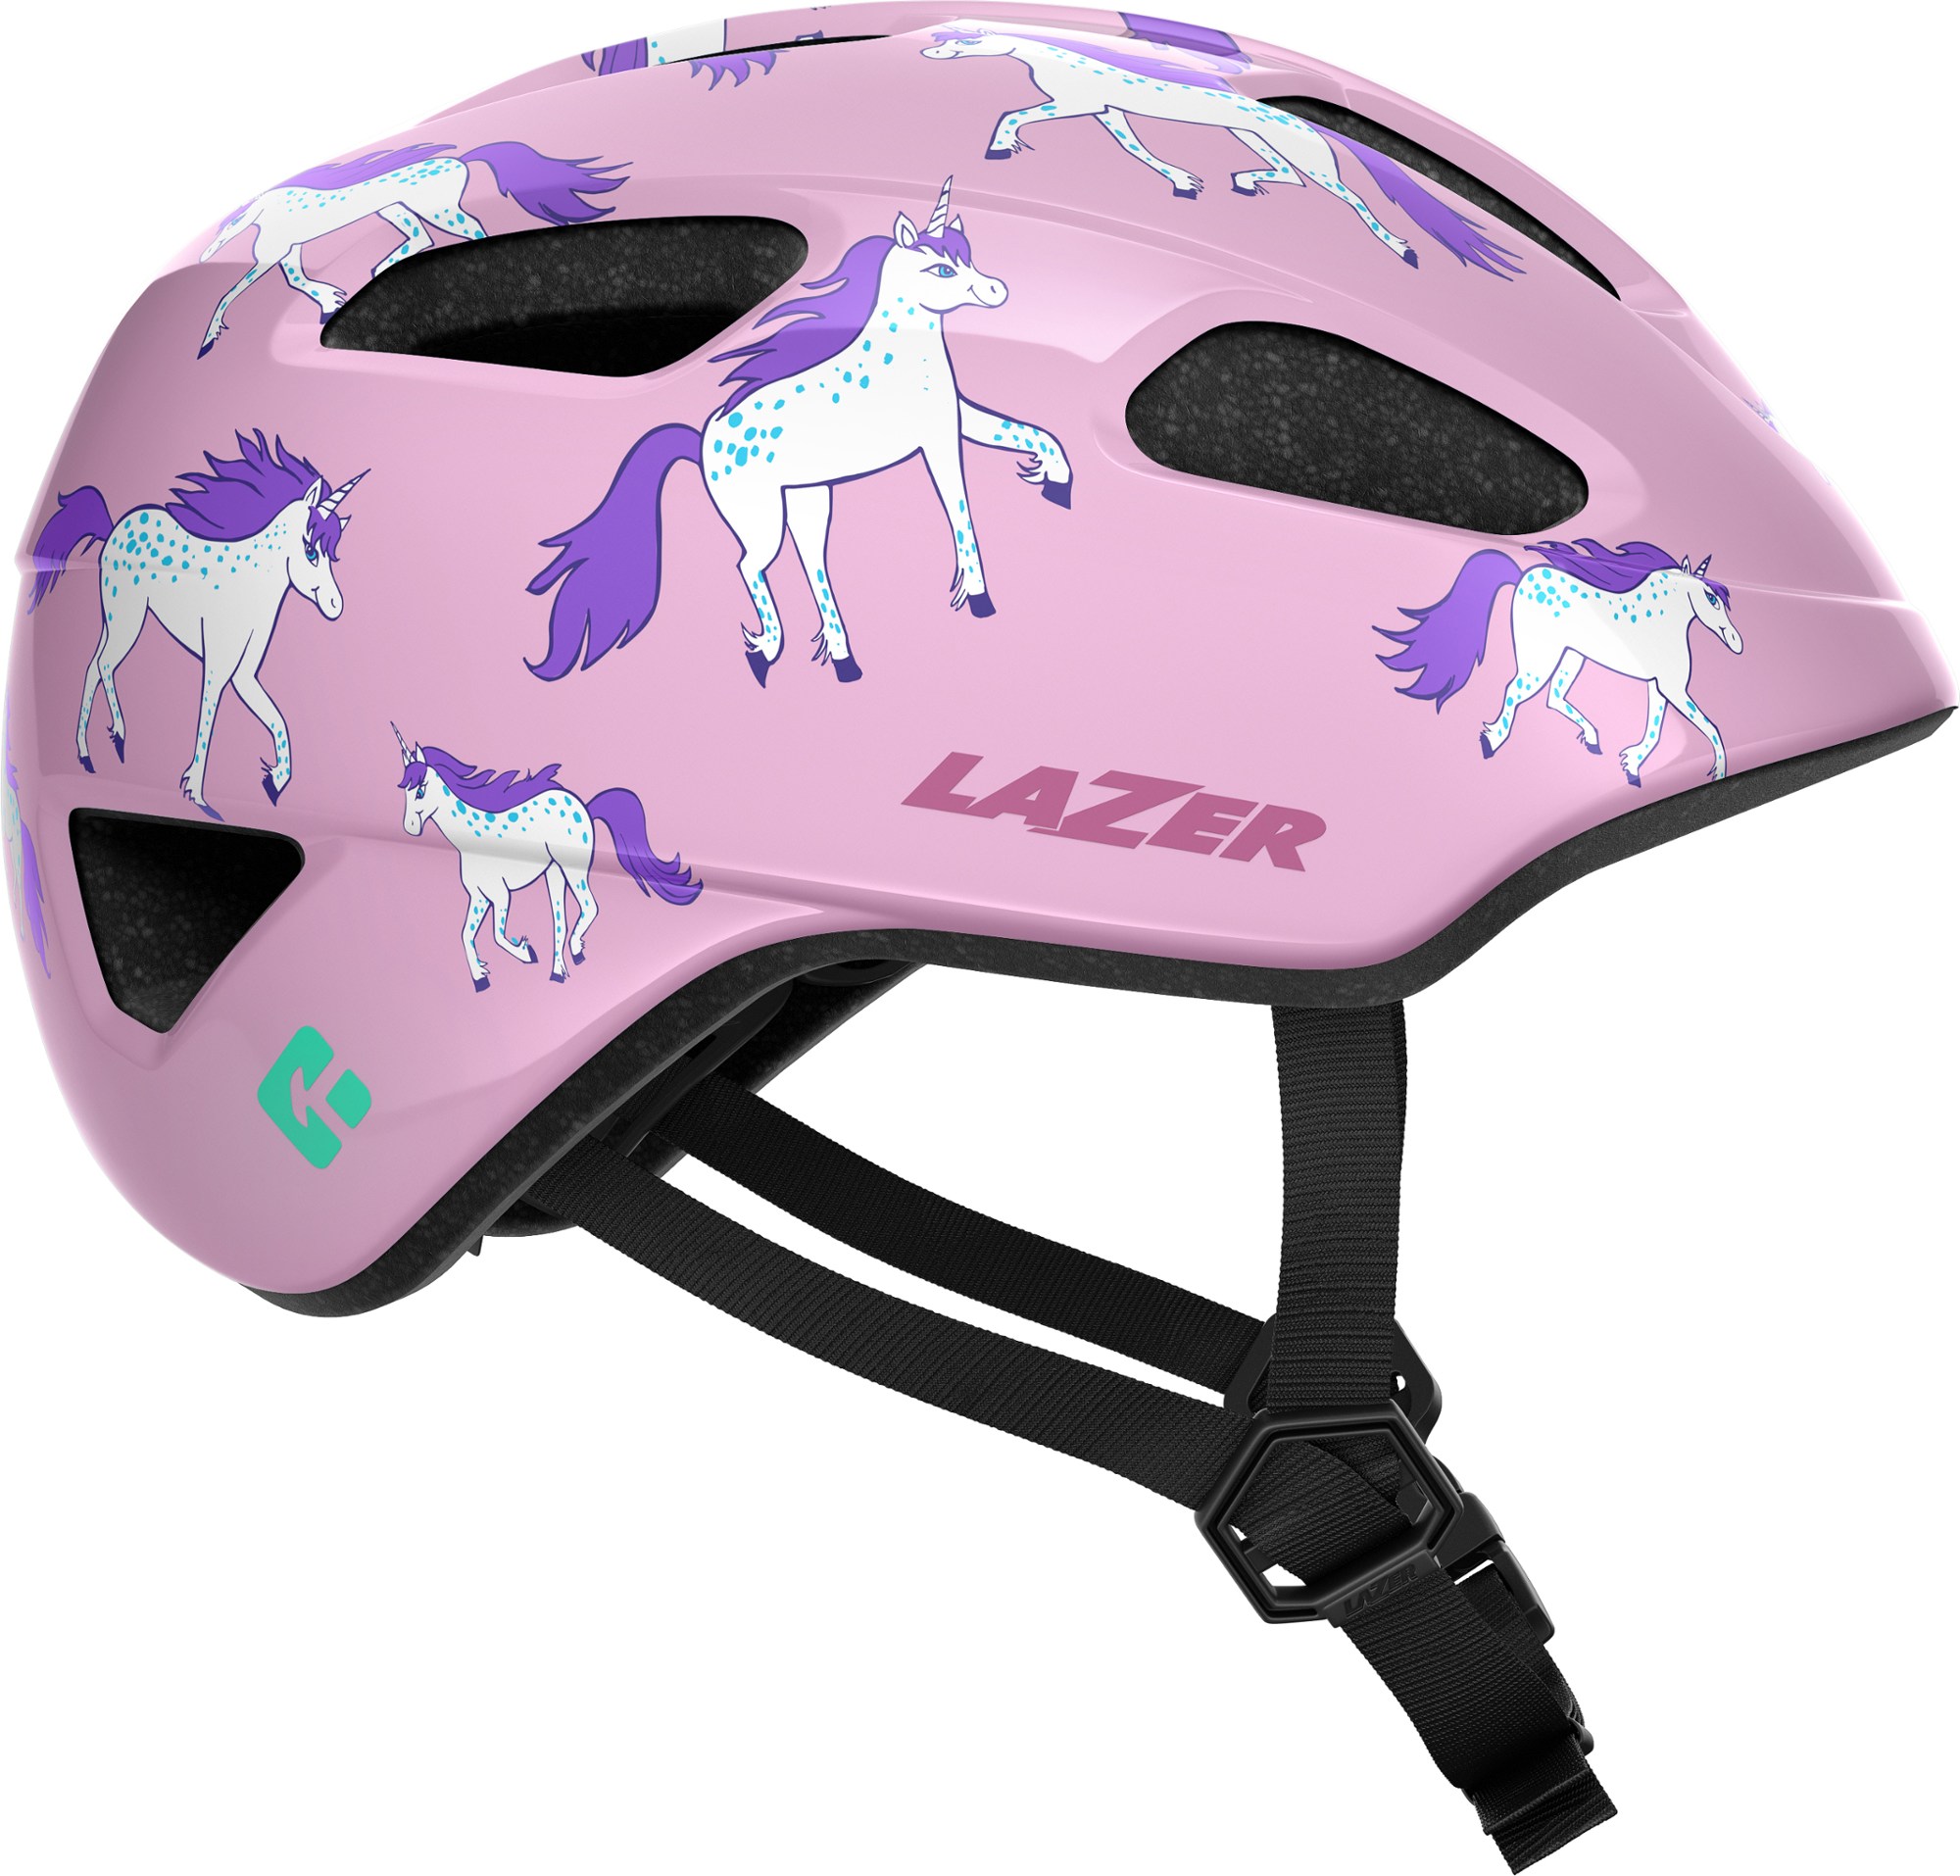 шлем велосипедный lazer kids lil gekko цвет розовый морской конек размер u blc2207888205 Велосипедный шлем Nutz KinetiCore — детский Lazer, розовый